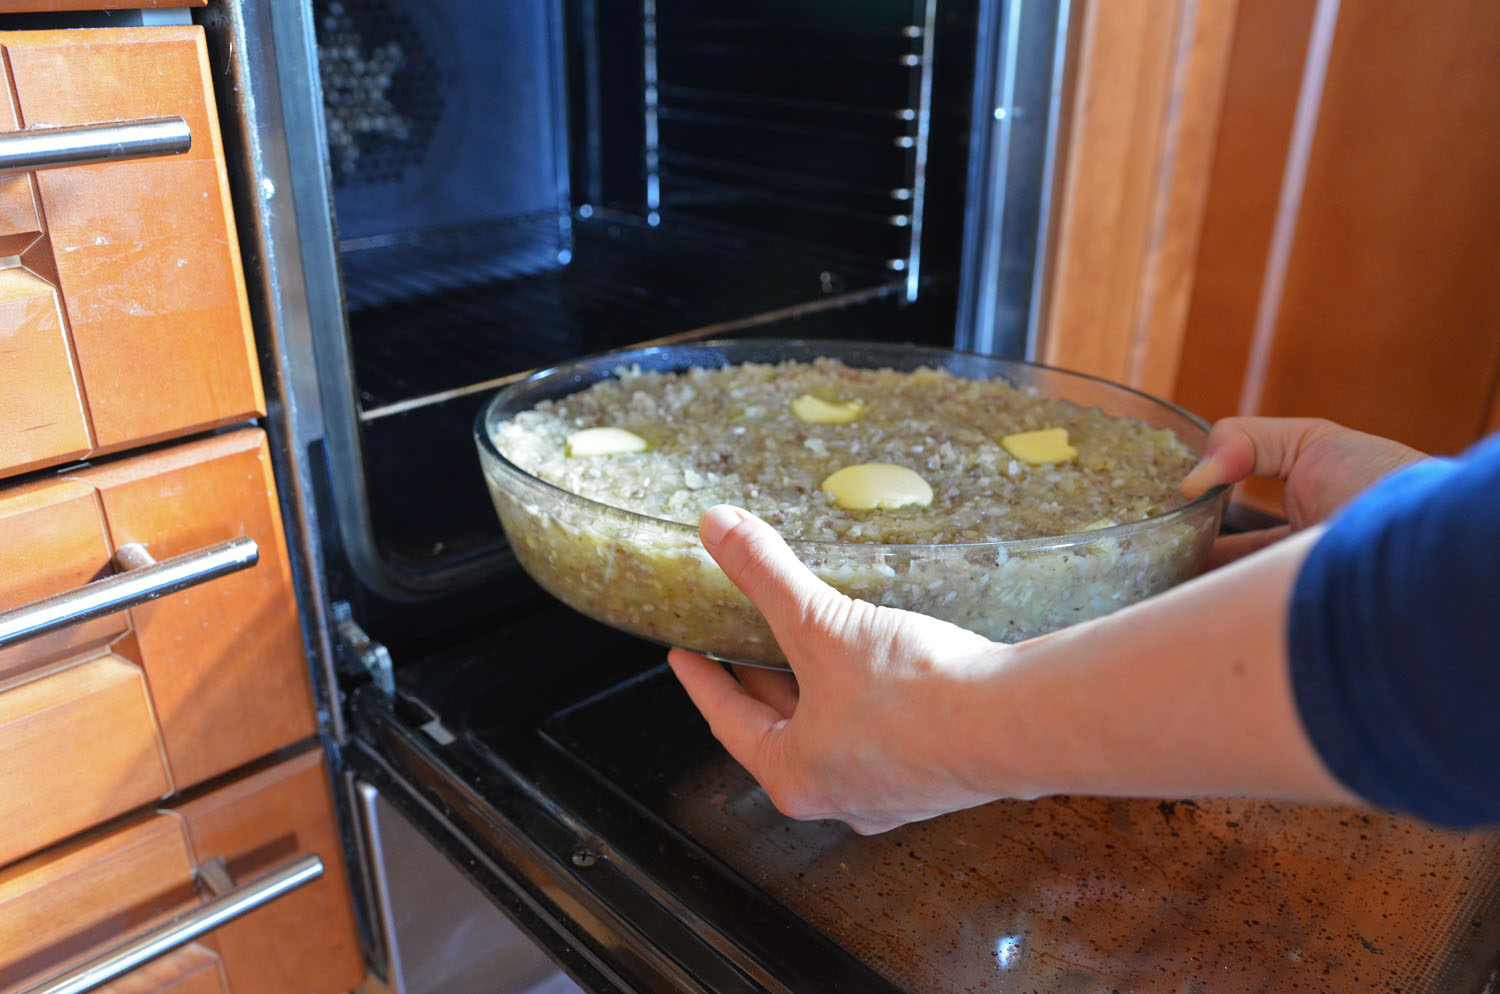 Prepare cabbage casserole in the oven